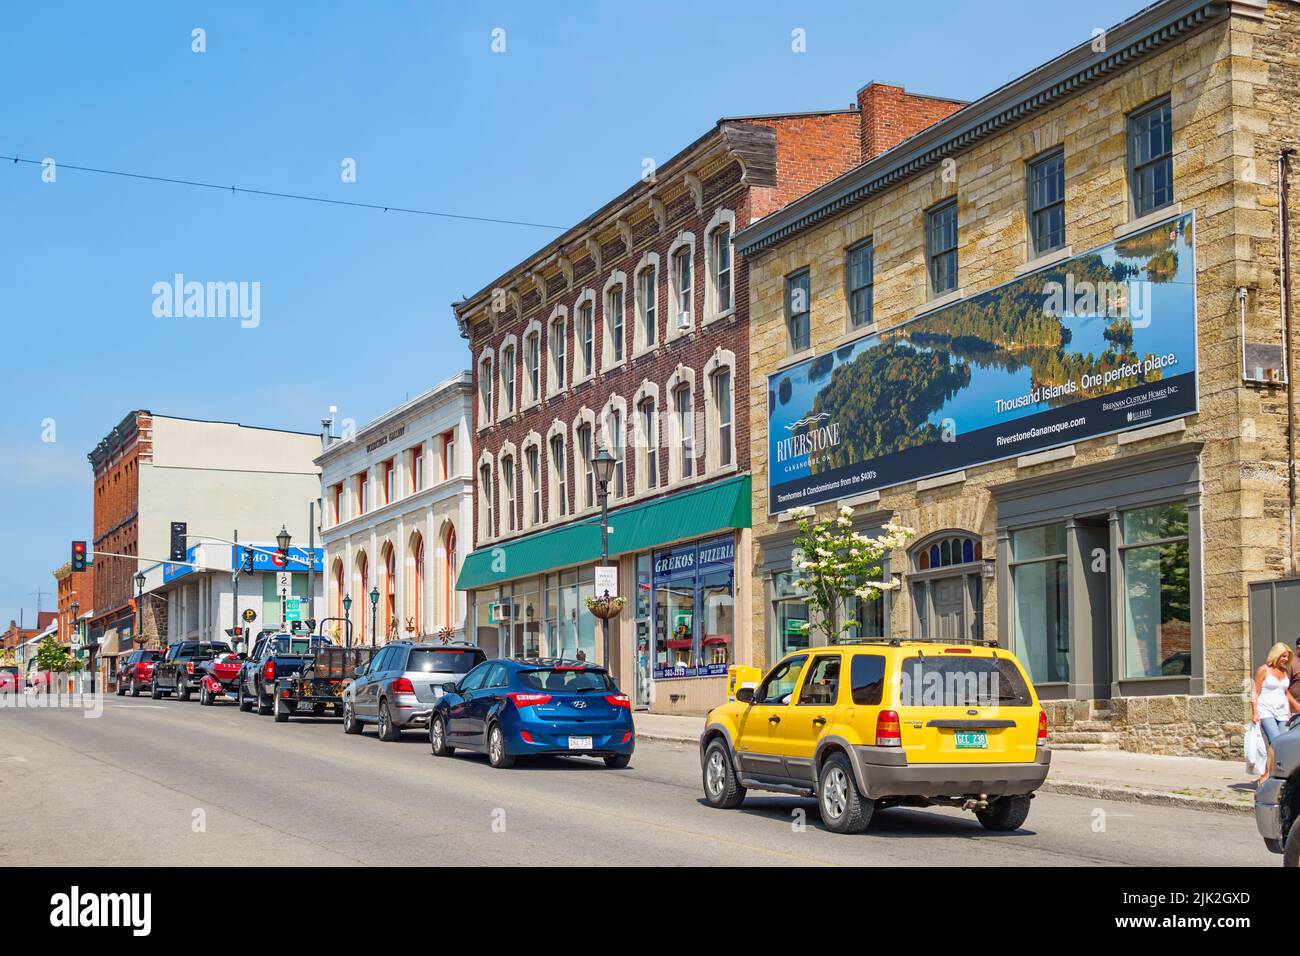 Les voitures circulent dans le centre-ville de Gananoque, Ontario Canada, par une journée ensoleillée. Banque D'Images